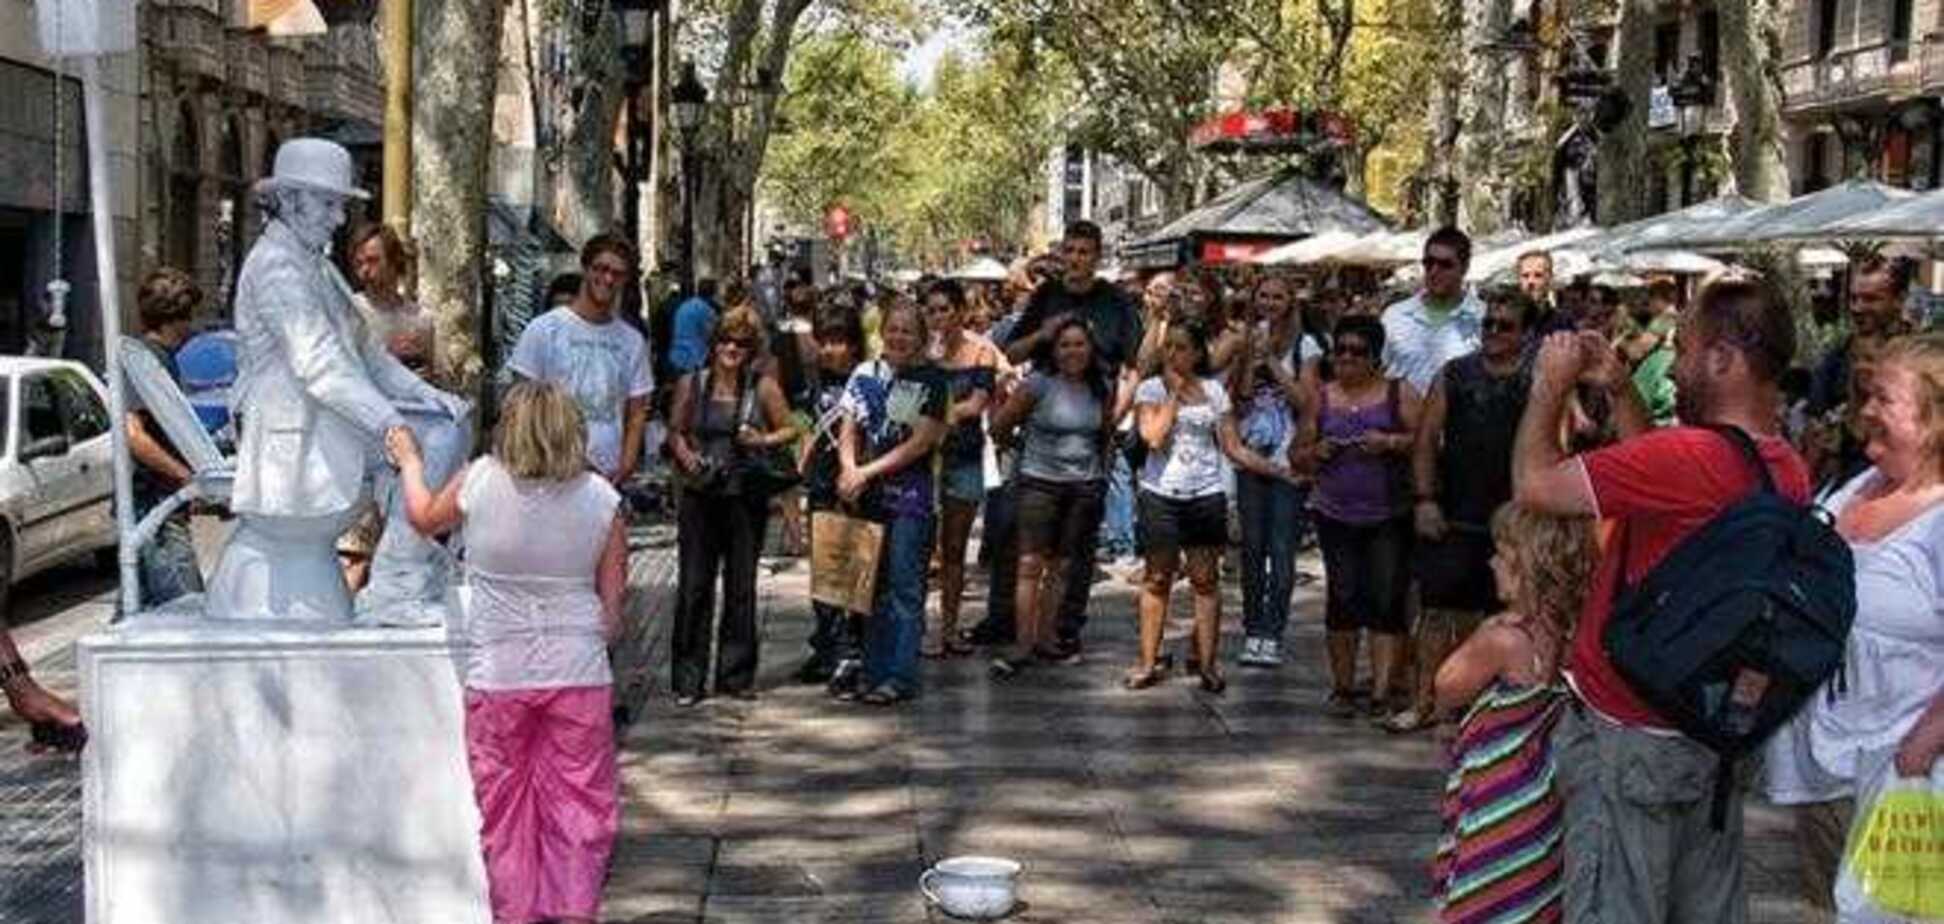 Туристы больше не смогут купить птичку на бульваре Рамбла в Барселоне 